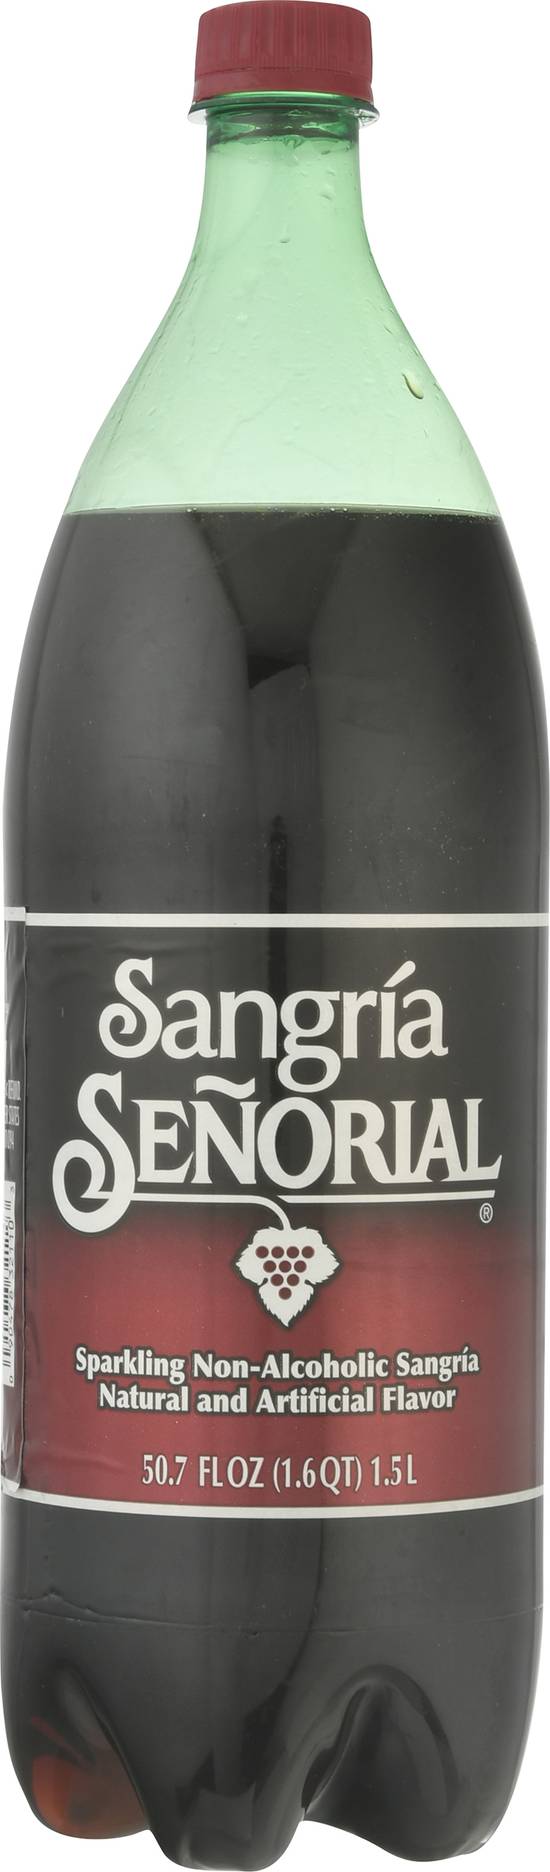 Sangría Señorial Sparkling Non-Alcoholic Sangria (50.7 fl oz)